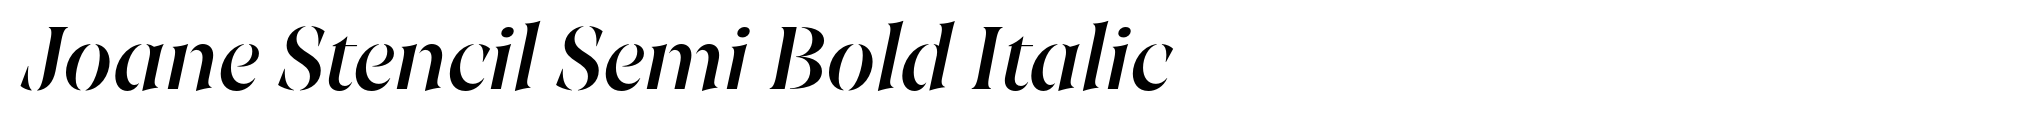 Joane Stencil Semi Bold Italic image